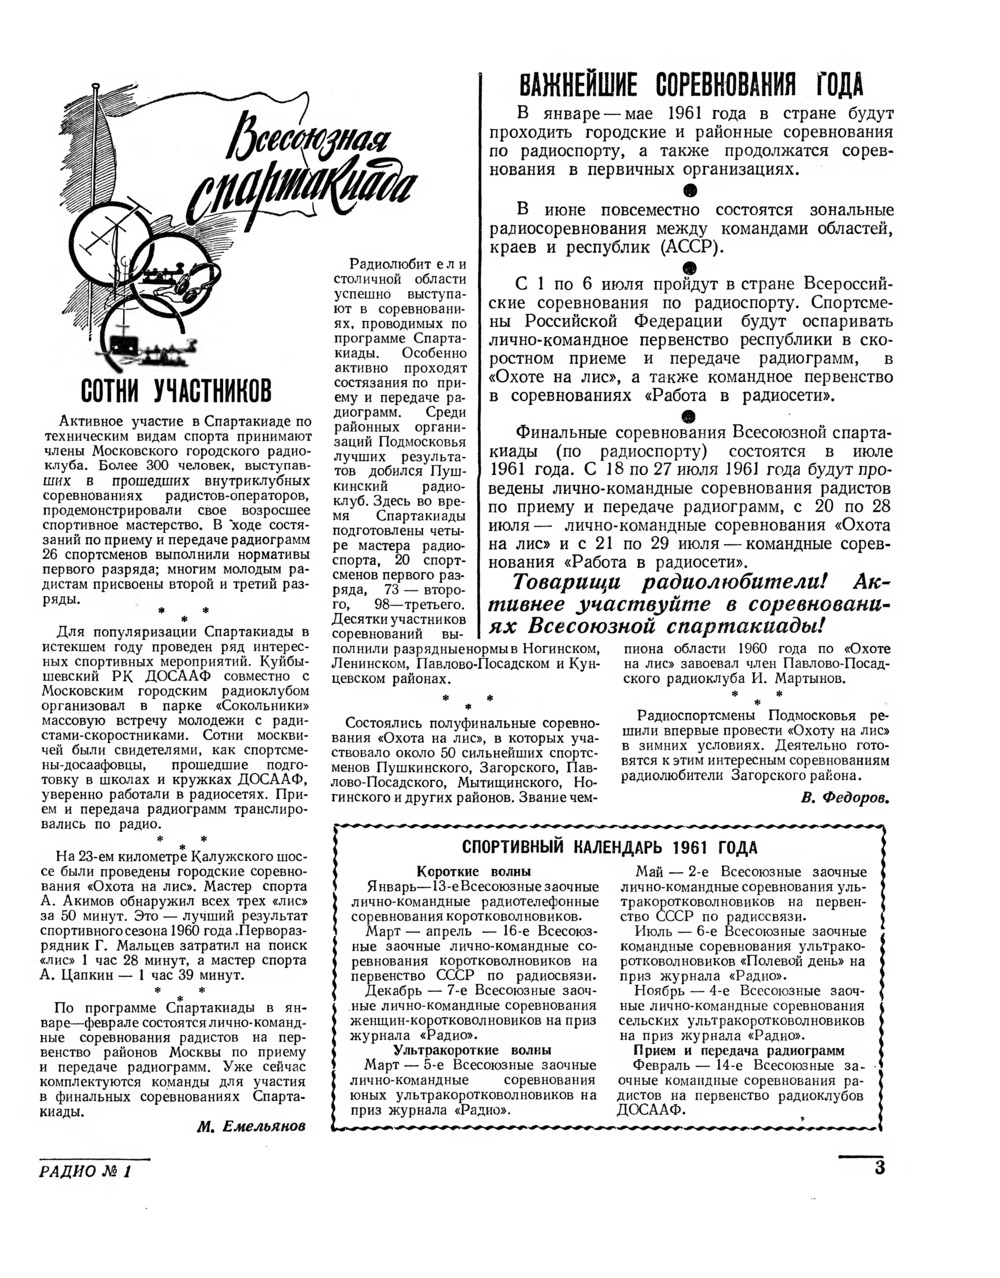 Стр. 3 журнала «Радио» № 1 за 1961 год